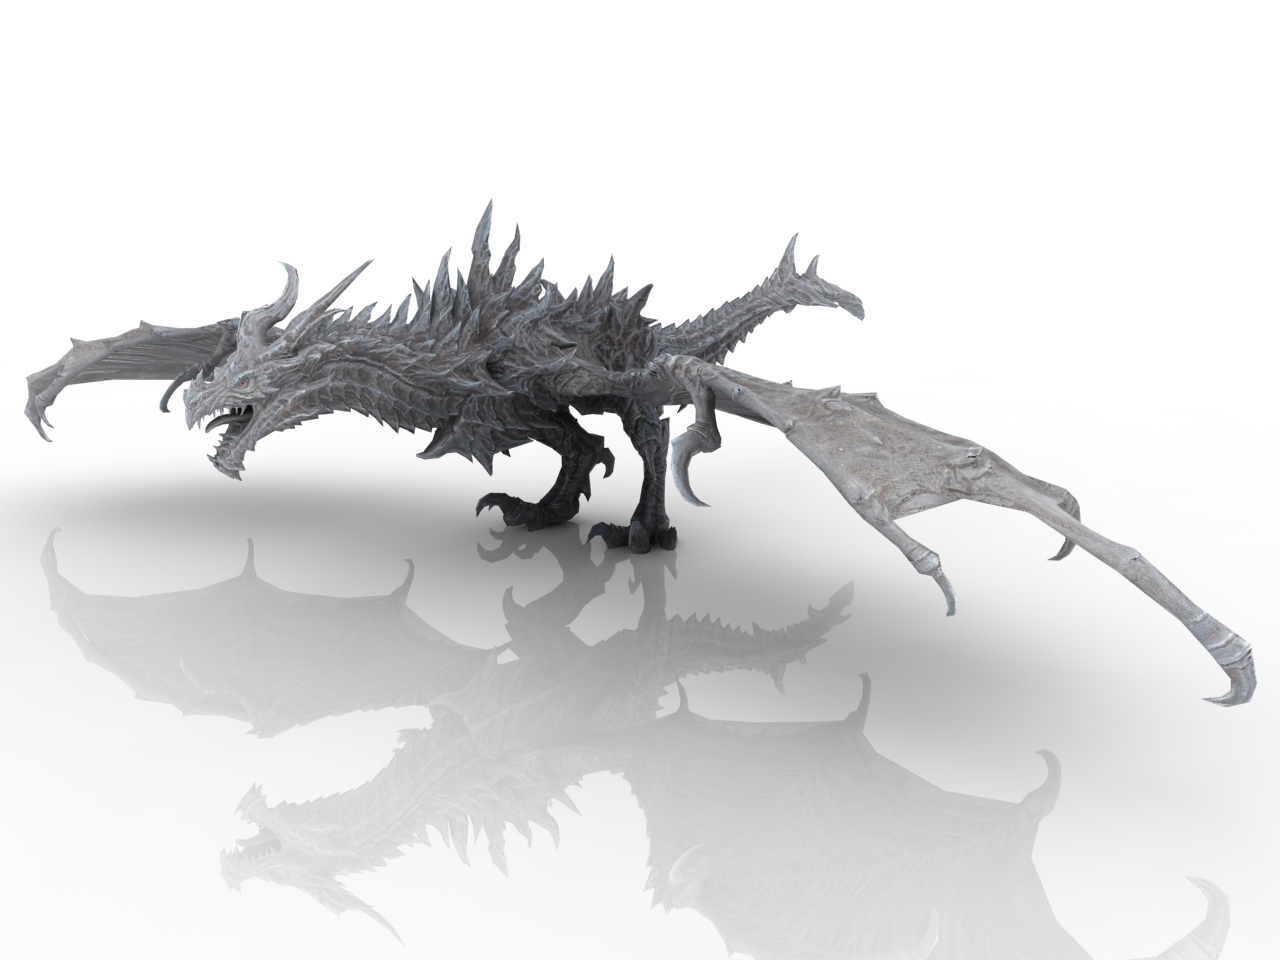 3d модель Ледяной дракон для 3d принтера - скачать бесплатно 3д модель в формате stl или g-code